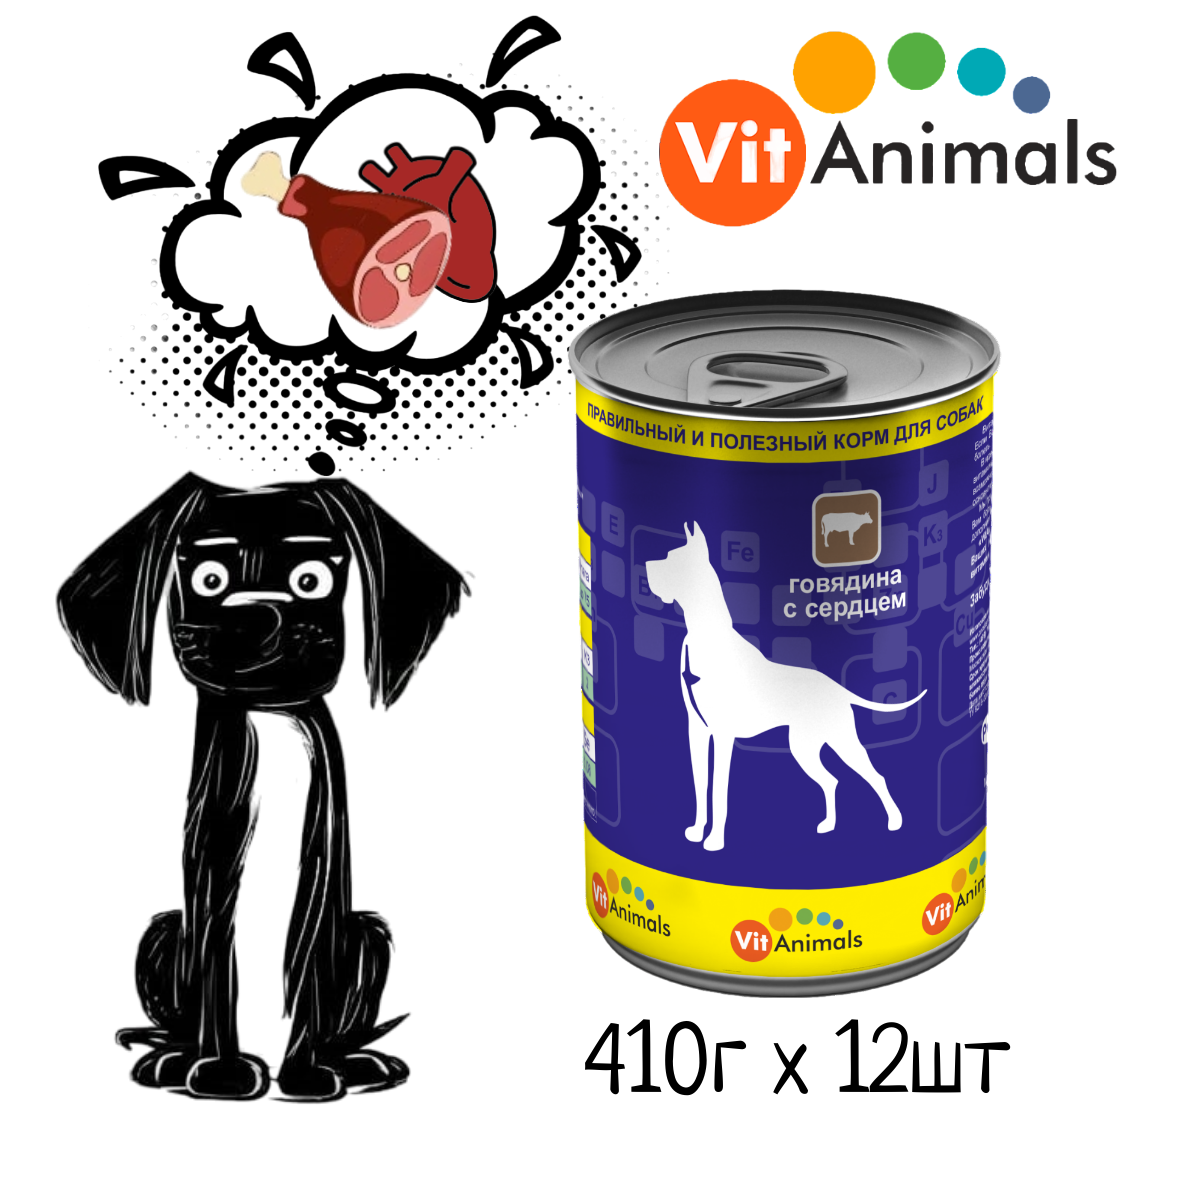 VitAnimals консервы для собак Говядина с сердцем 410г (12шт)